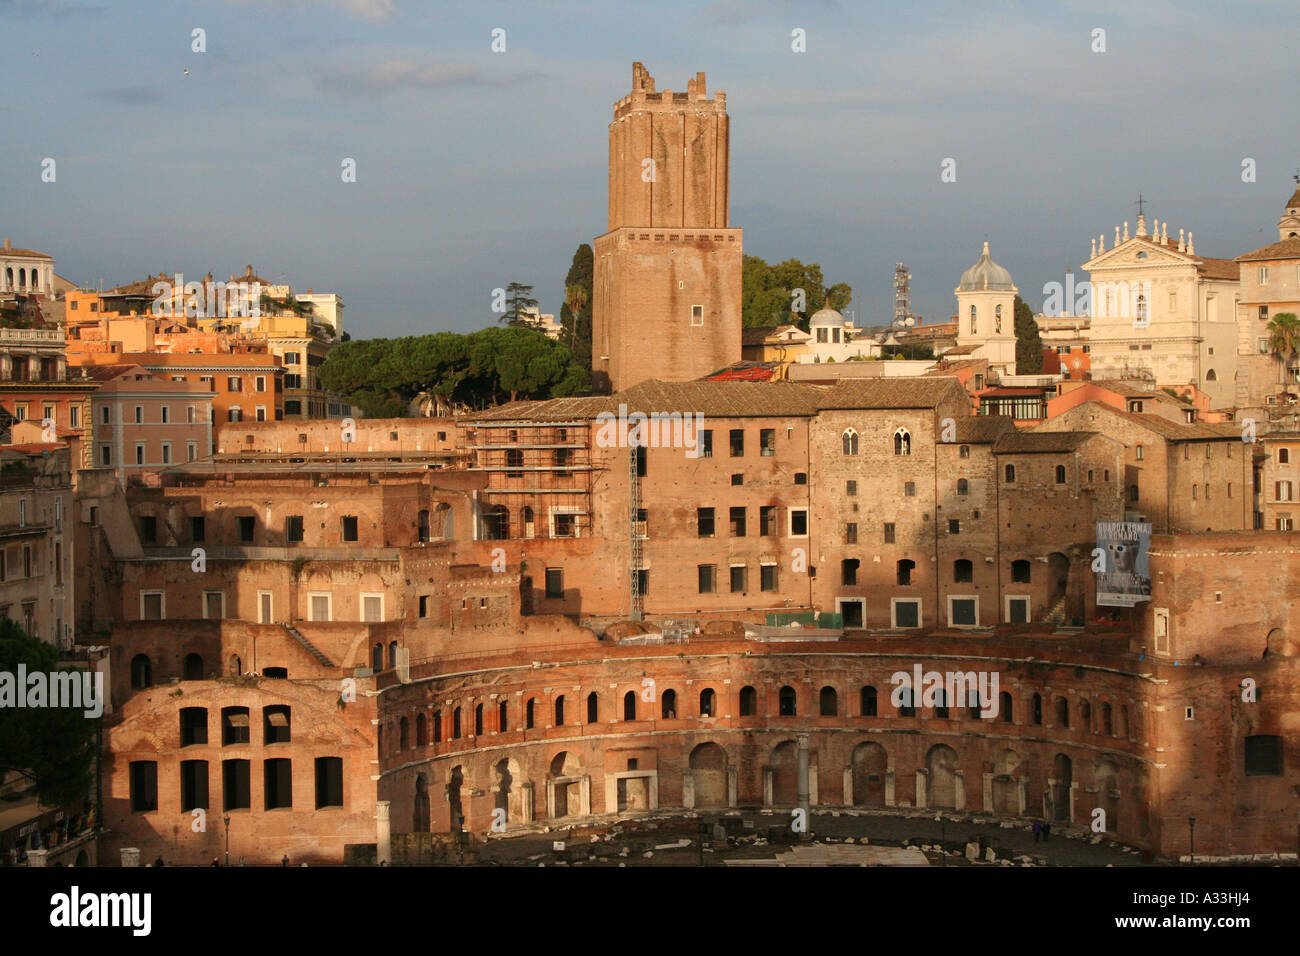 Mercati di Traiano nel cuore dell antica Roma, lazio, Italy Foto Stock